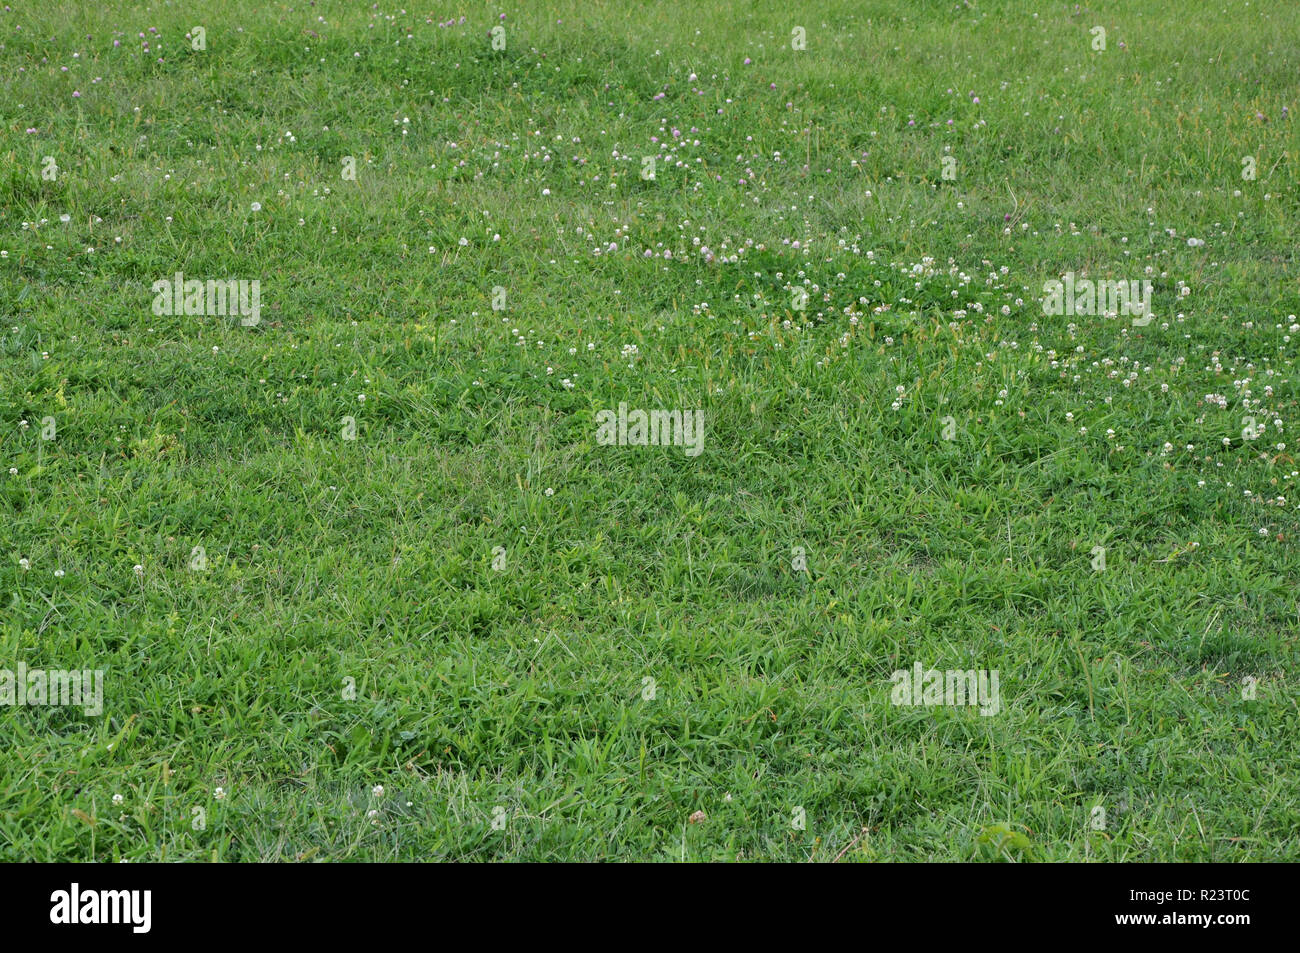 Arrière-plan horizontal de l'herbe verte avec de petites fleurs blanches. Banque D'Images